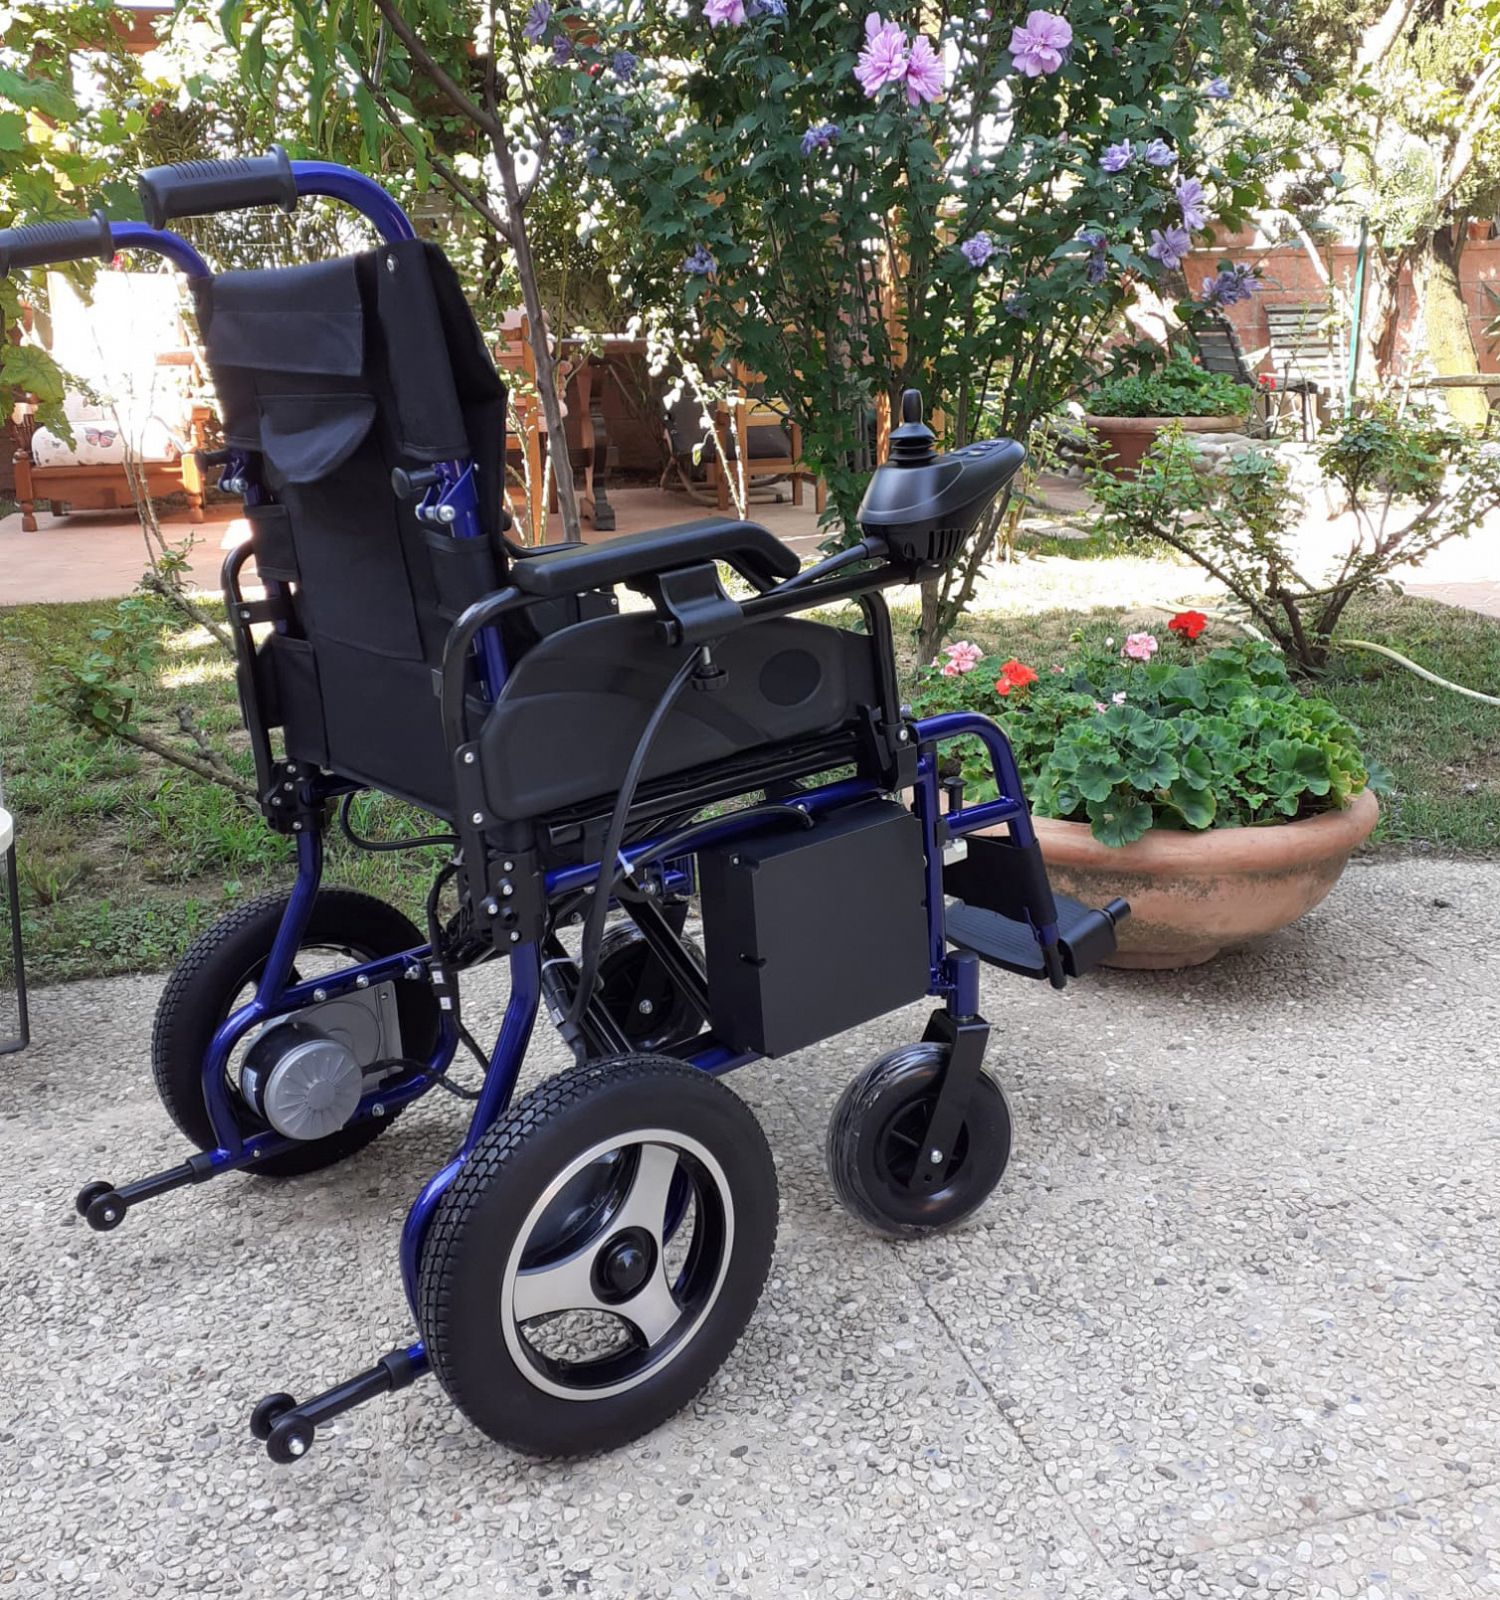 poltrona per disabili e anziani con ruote molto grandi